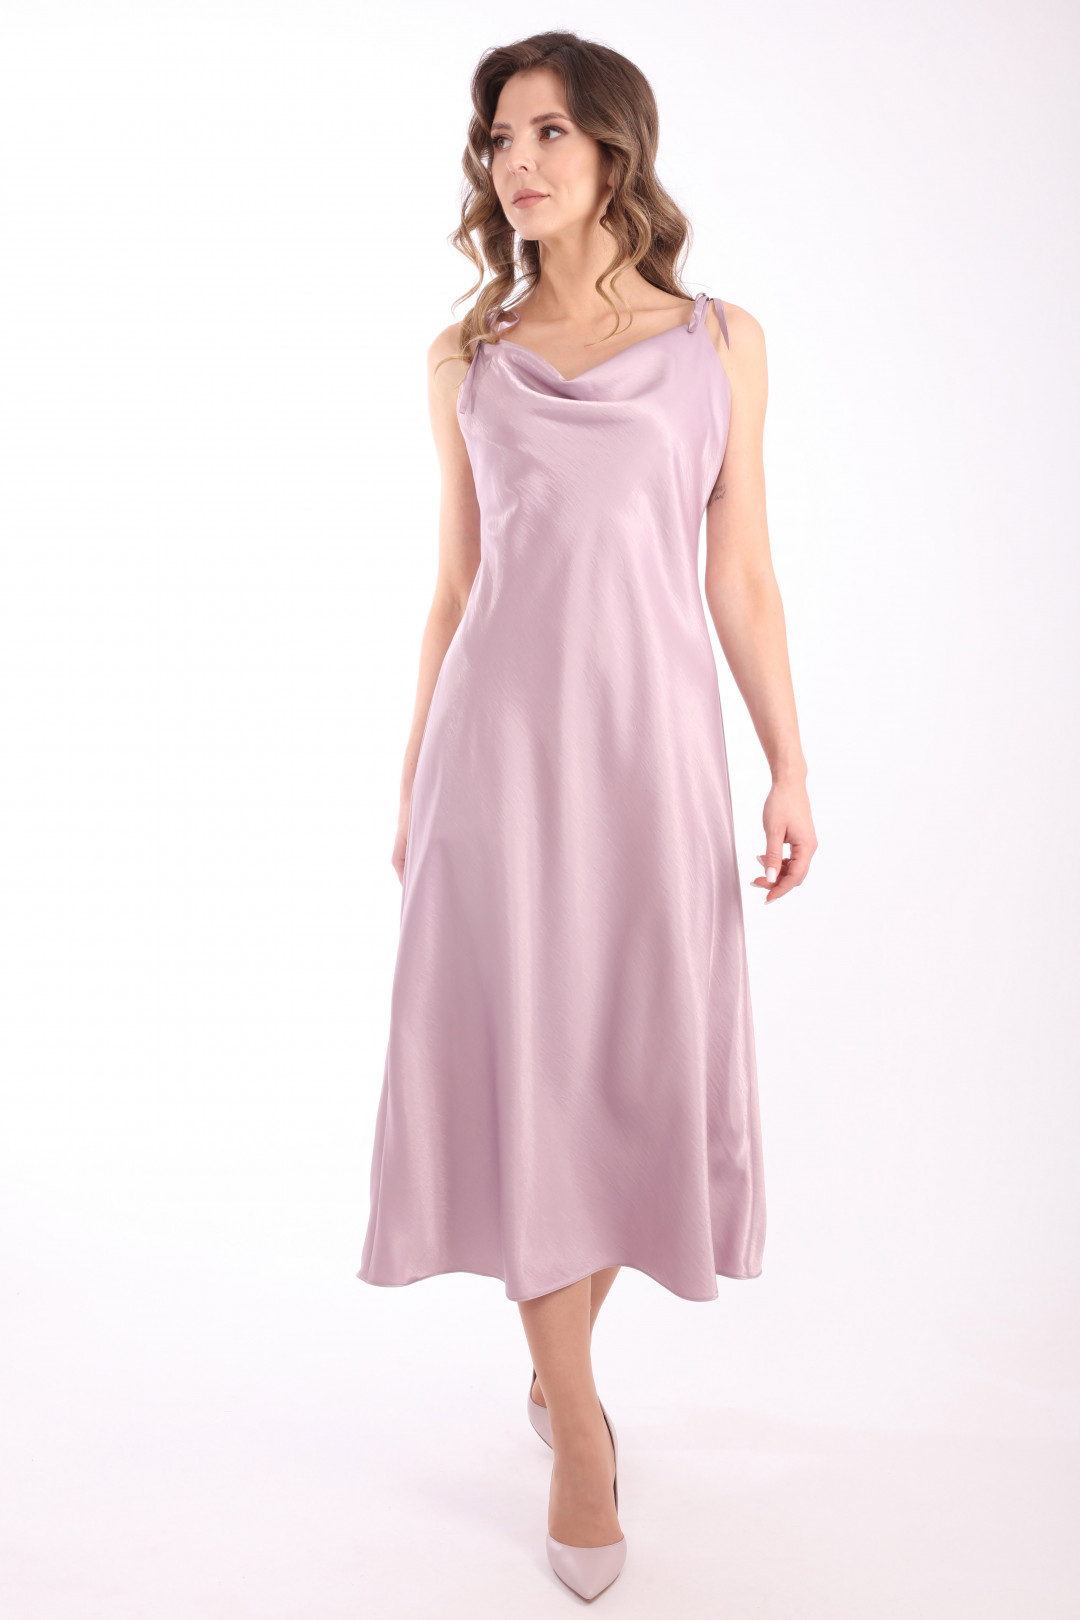 Платье Лаборатория Моды ВИ 3080 Лавандово-розовый